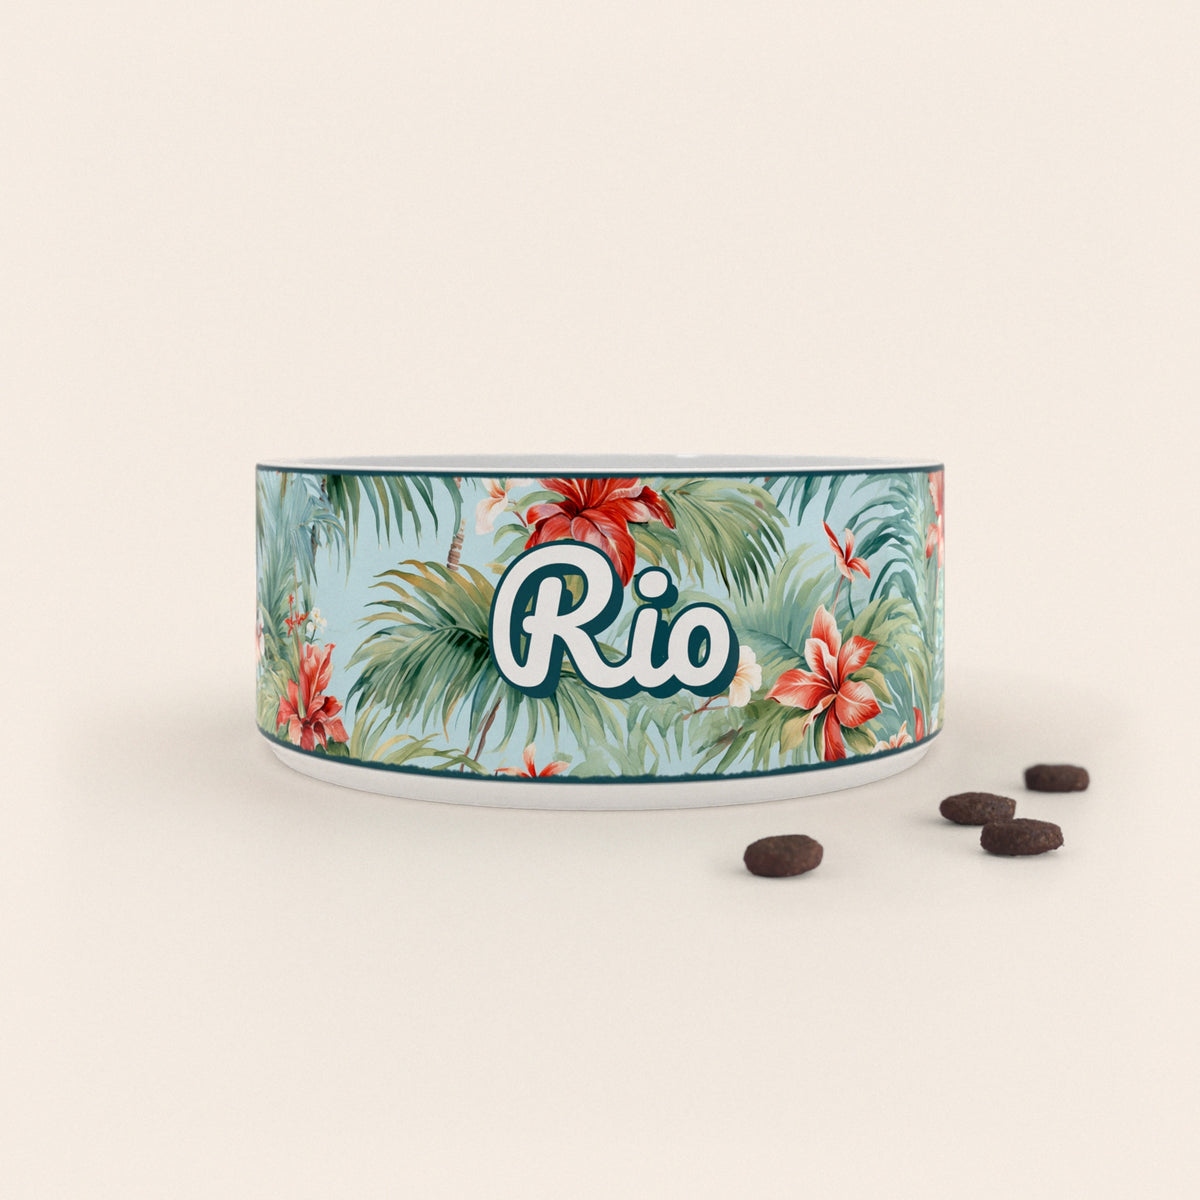 Gamelle pour chien au motif Hawaï personnalisés avec le nom Rio, accompagné de croquettes sur fond neutre.